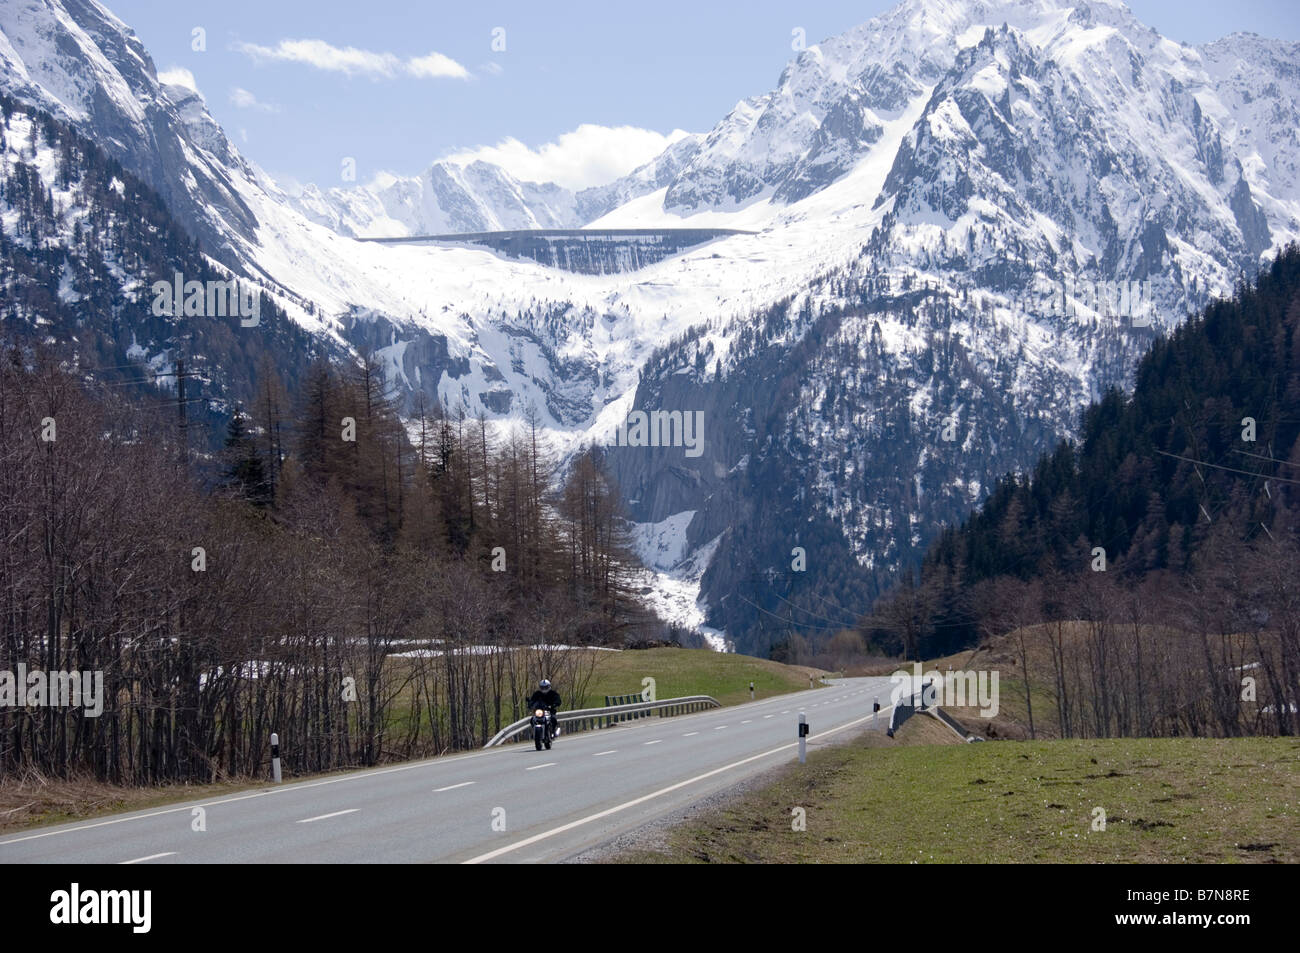 la-diga-del-lago-albigna-sopra-il-passo-del-maloja-in-primavera-grigioni-svizzera-b7n8re.jpg